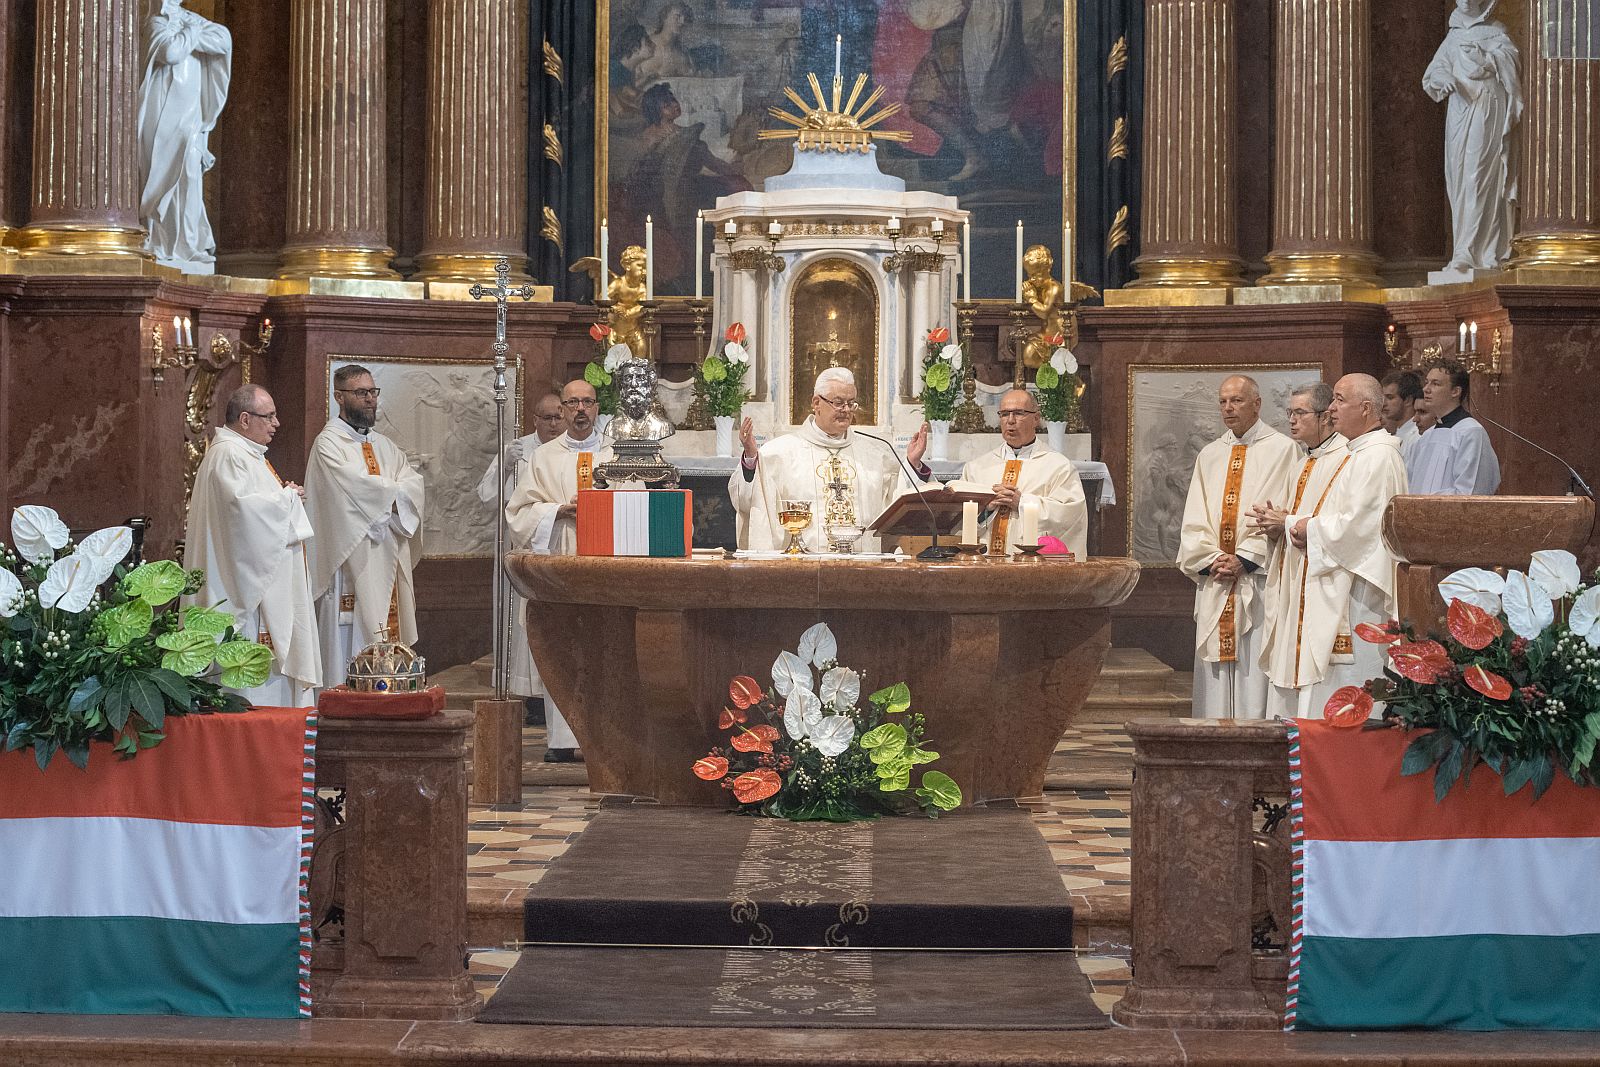 Ünnepi püspöki mise a Bazilikában államalapító Szent István napján